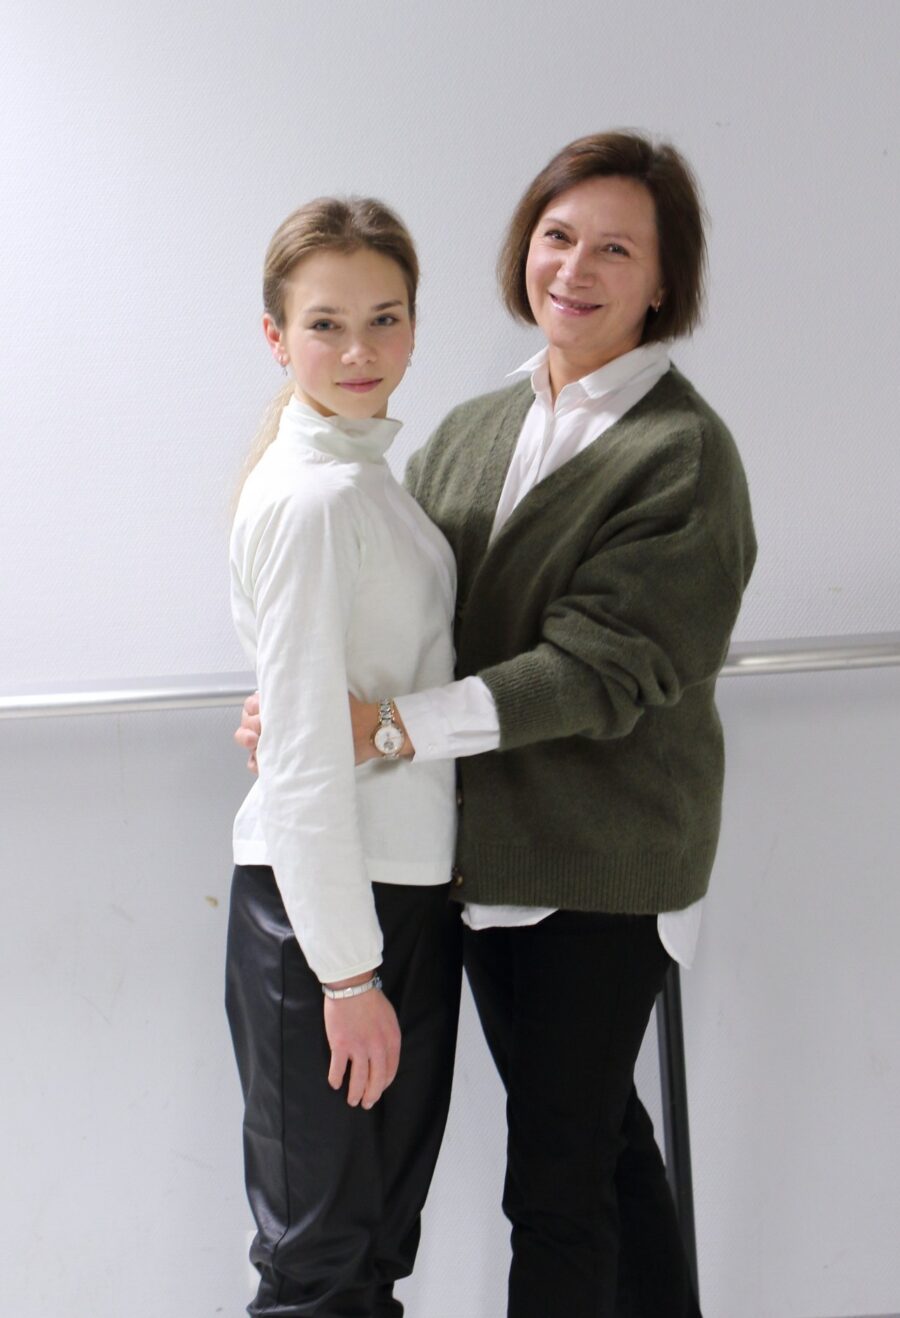 Lappeenrannan Taitoluistelijoiden valmentaja Marina Shirshova ja hänen tyttärensä Alisa Efimova ovat oppineet Alisan uran monissa mutkissa pitämään huolta siitä, että aikaa on aina myös äidin ja tyttären suhteelle ilman urheilua.